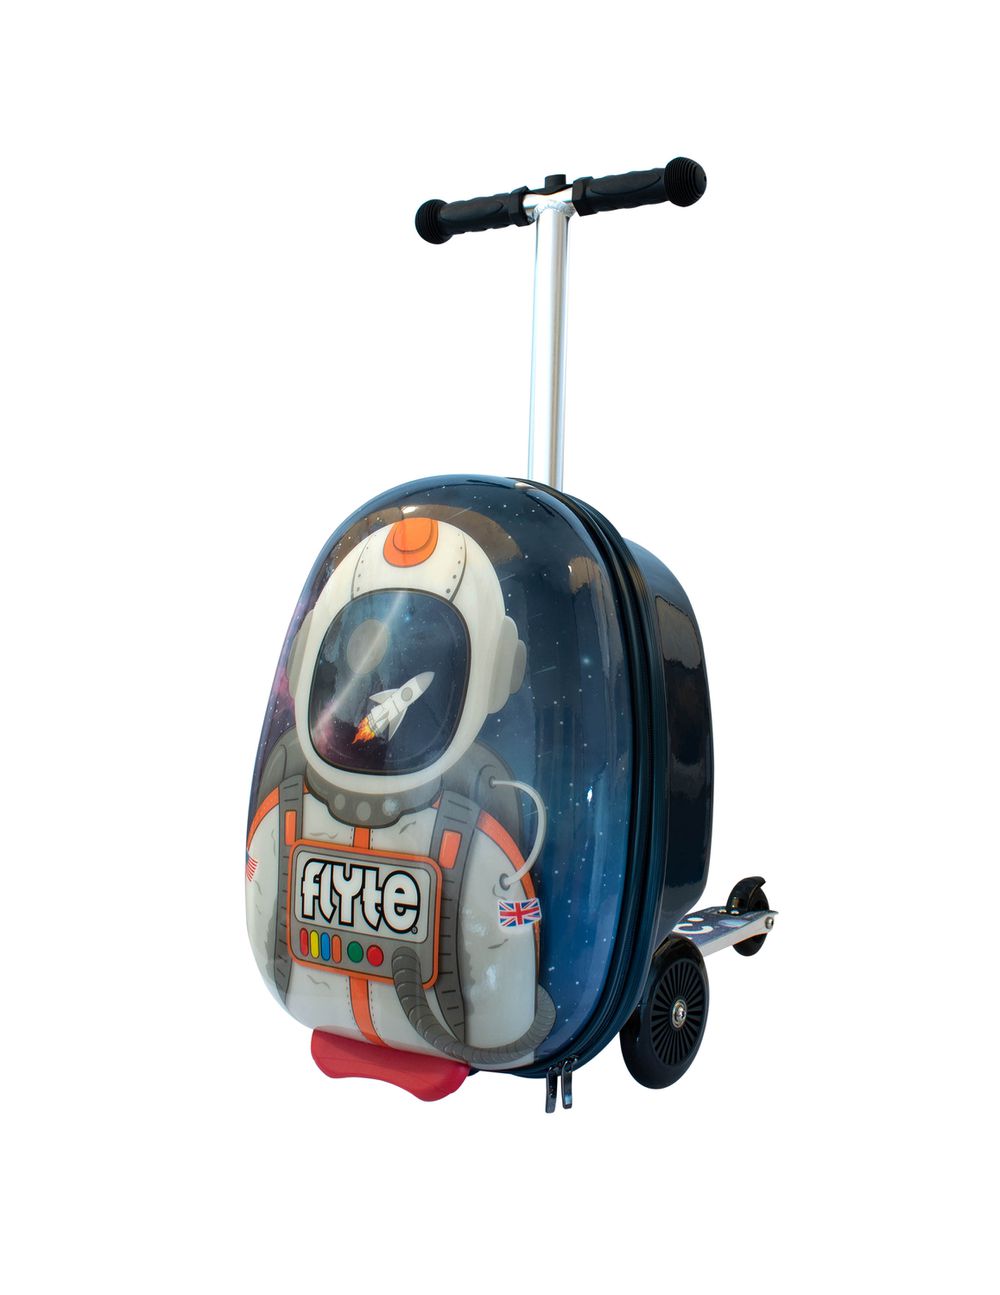 英國Flyte - 多功能滑板車-星際太空人 (18吋)-3.6KGS(可變型行李箱)